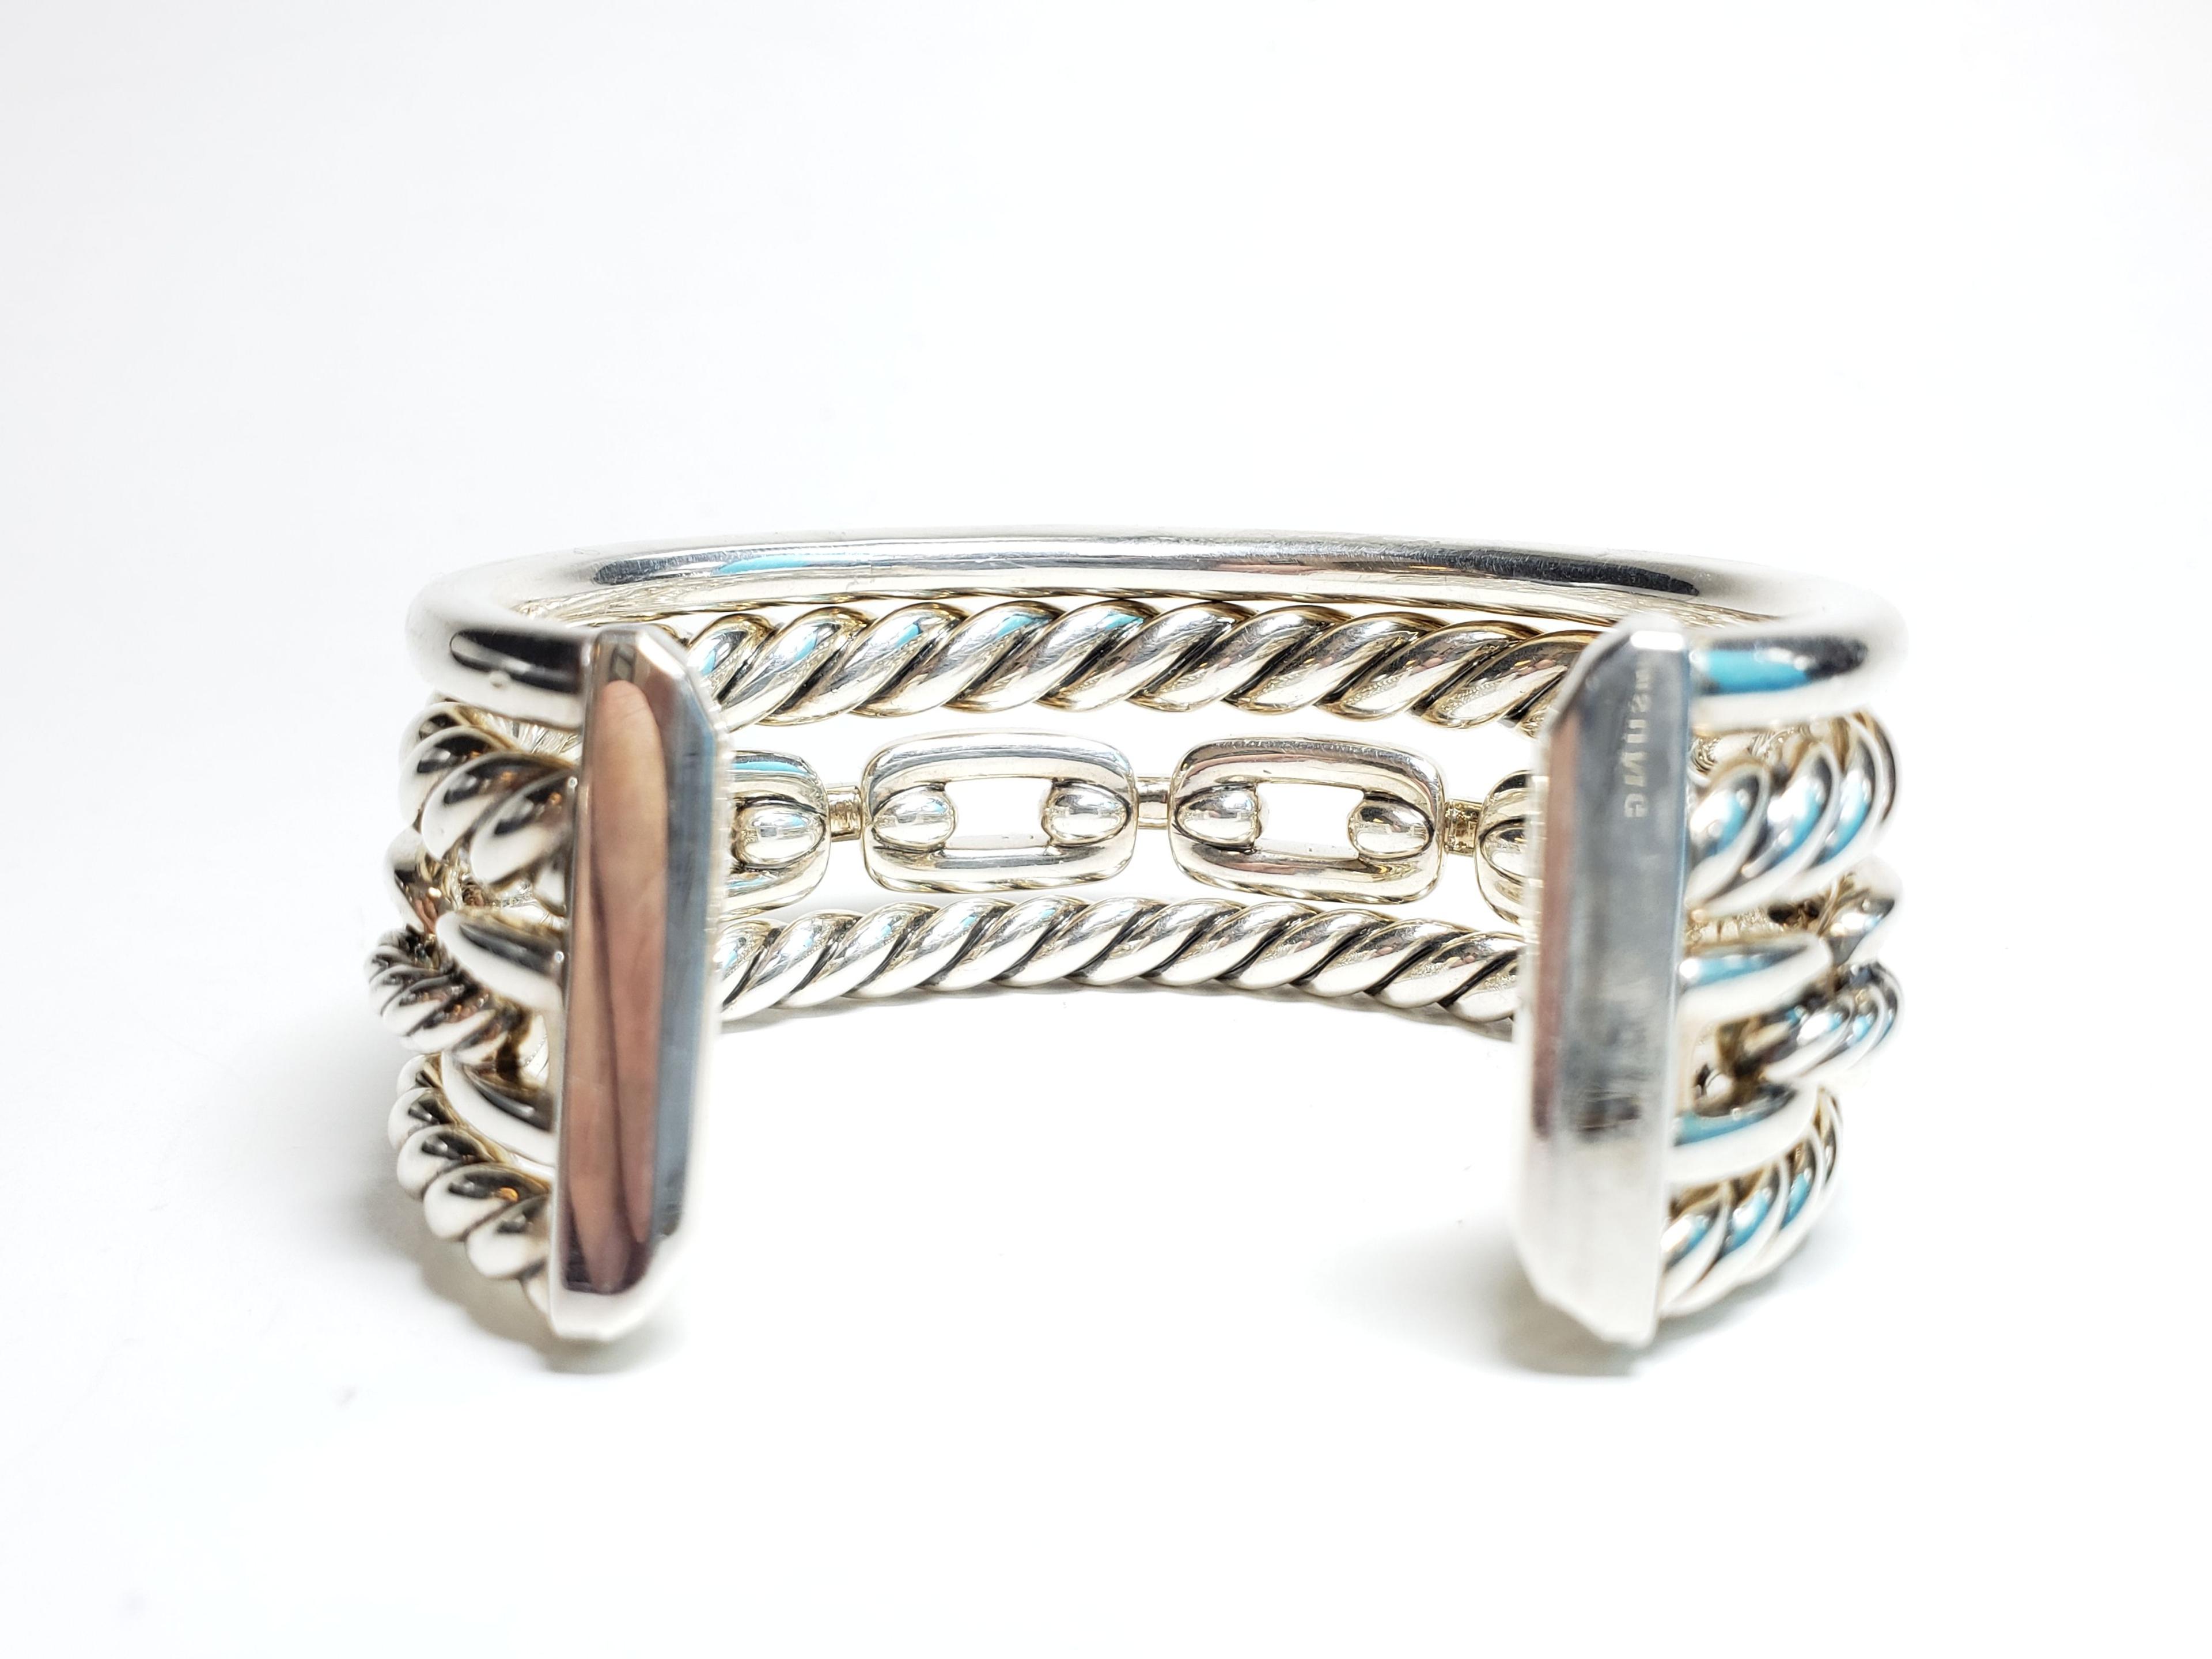 David Yurman 6" Wellesley Link Cuff Diamond Sterling Silver Bracelet